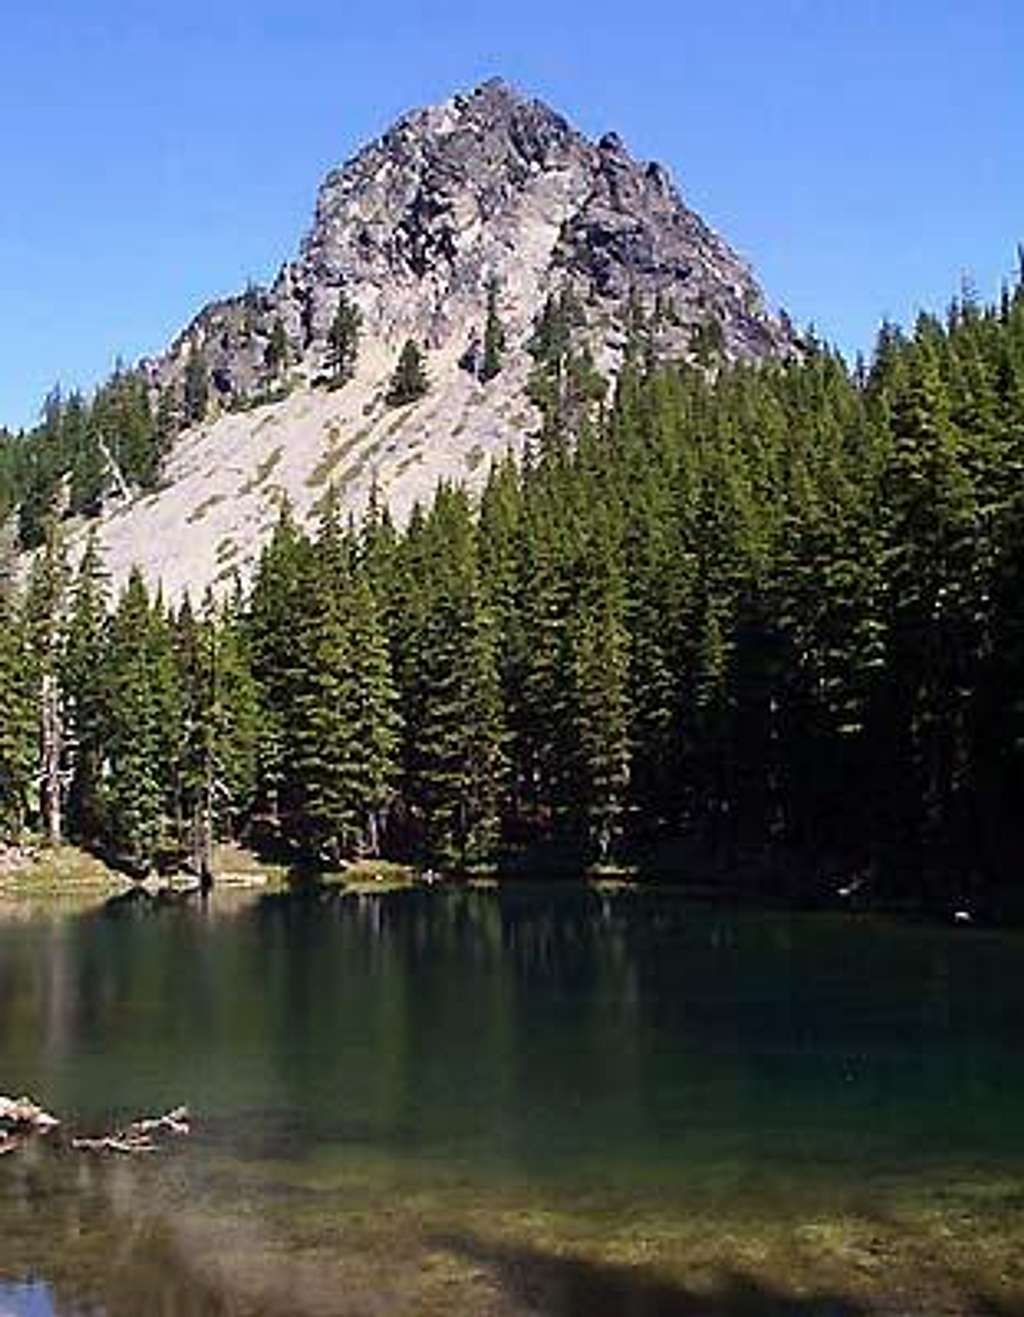 Mount Yoran from Divide Lake